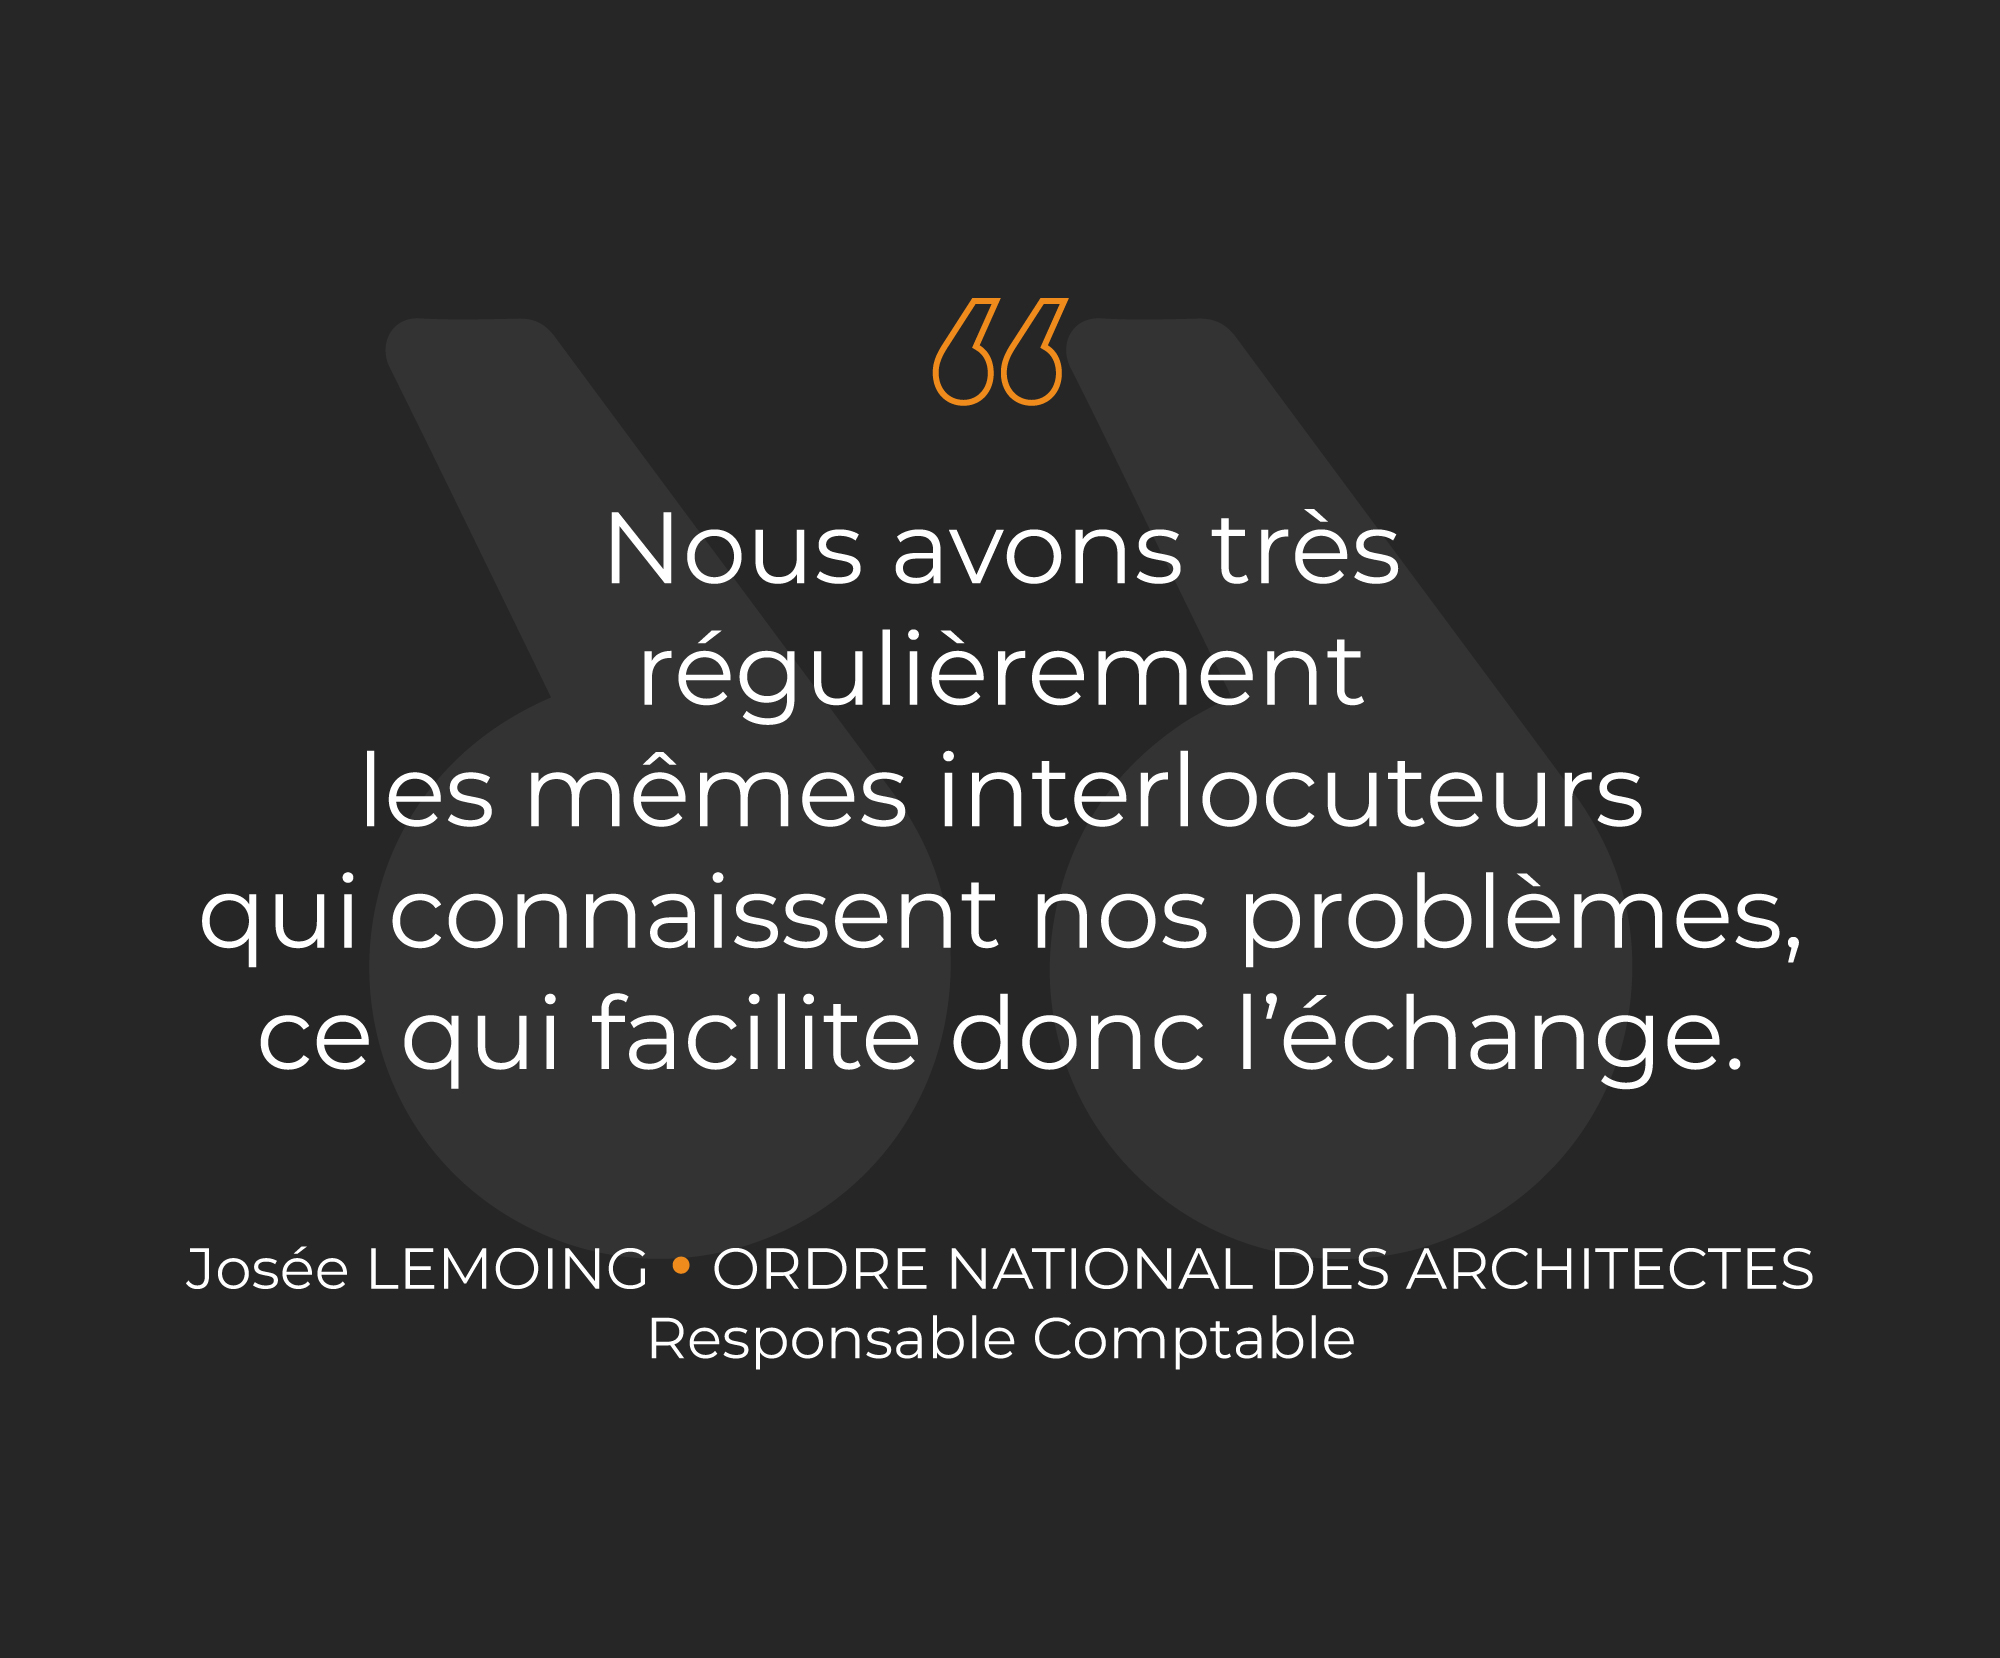 Verbatim client Ordre National des Architectes - Tribune Axelle Doublet